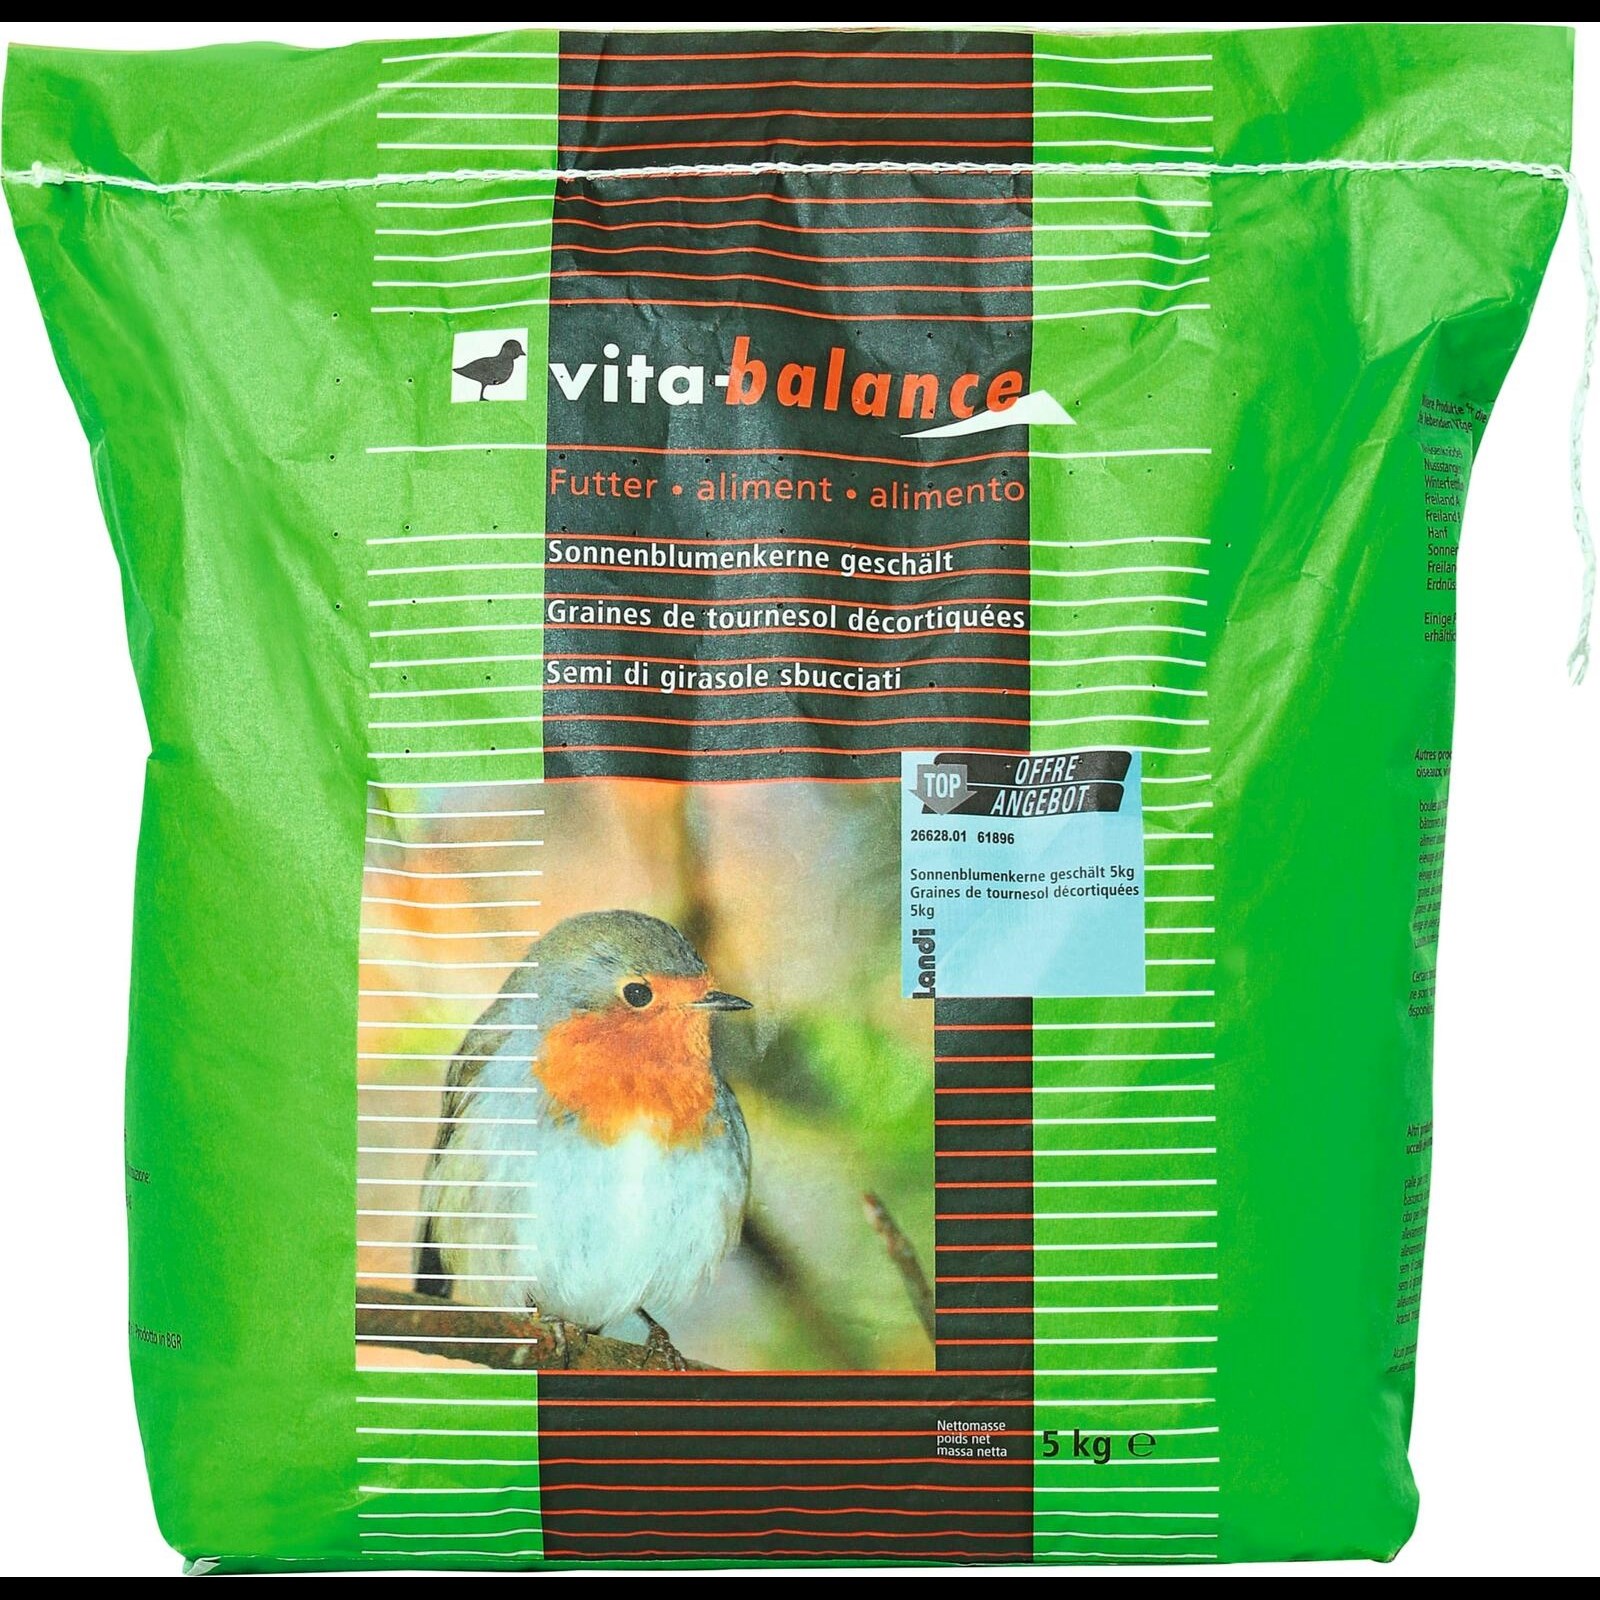 Graines de tournesol décortiquées pour oiseaux (1,8 kg